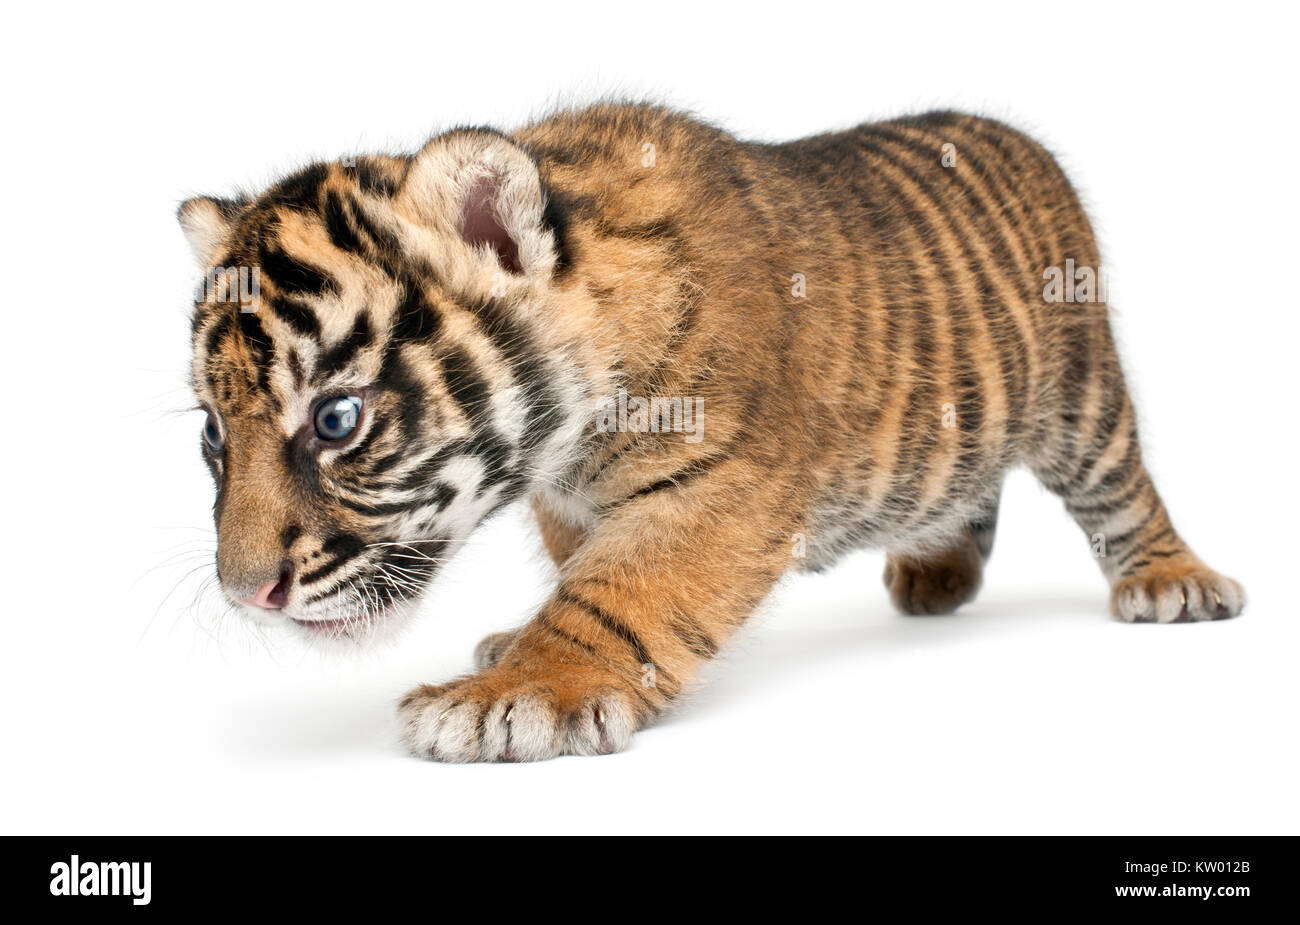 Sumatran Tiger cub, Panthera tigris sumatrae, 3 weeks old, walking in front of white background Stock Photo